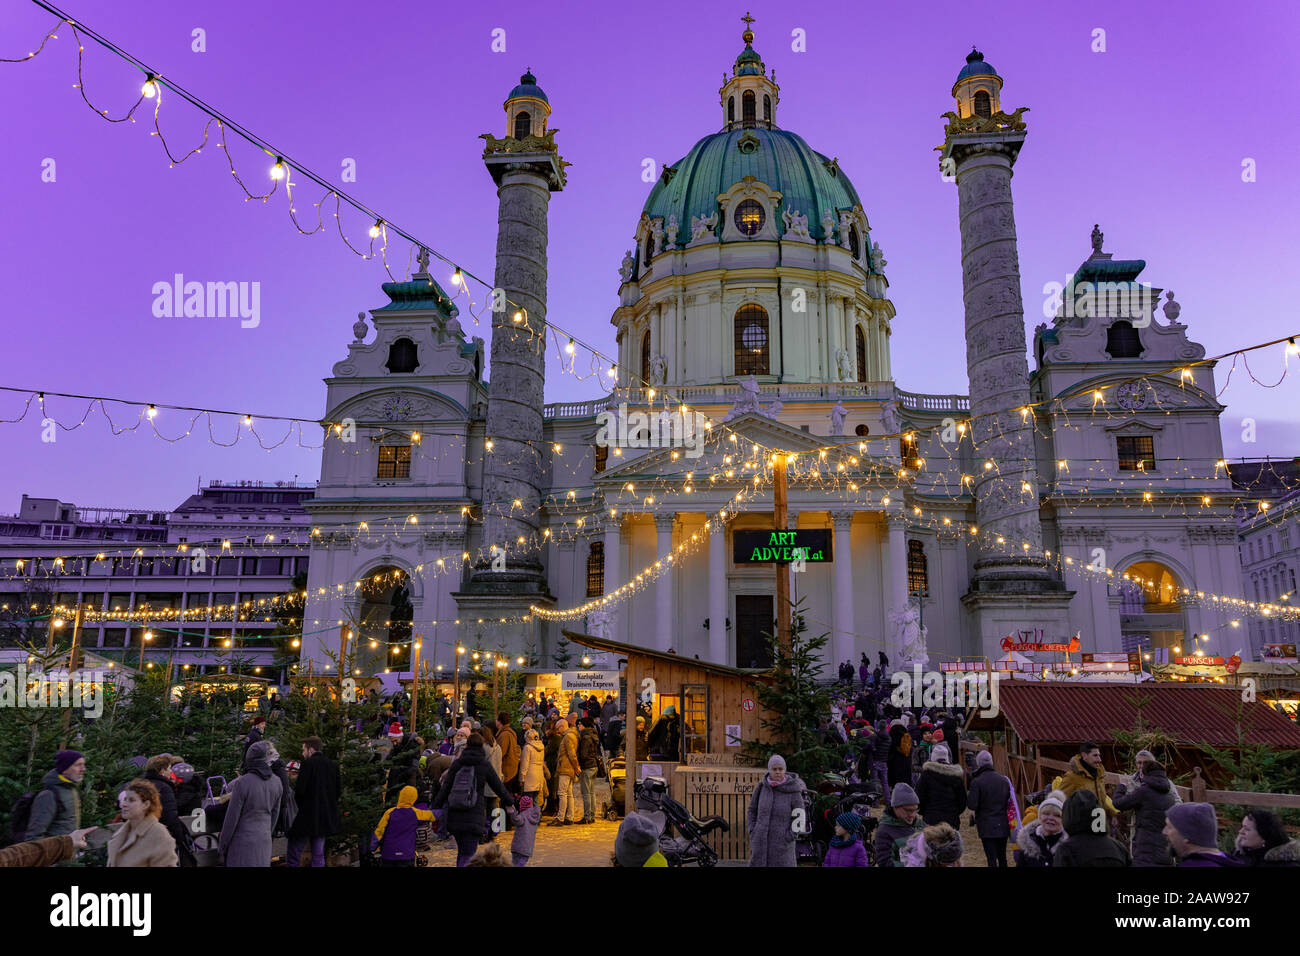 Vienne, Autriche - 11.23.2019 : coucher de soleil sur le marché de l'Avent Noël de l'art à Vienne, à l'Karsplatz avec beaucoup de gens Banque D'Images